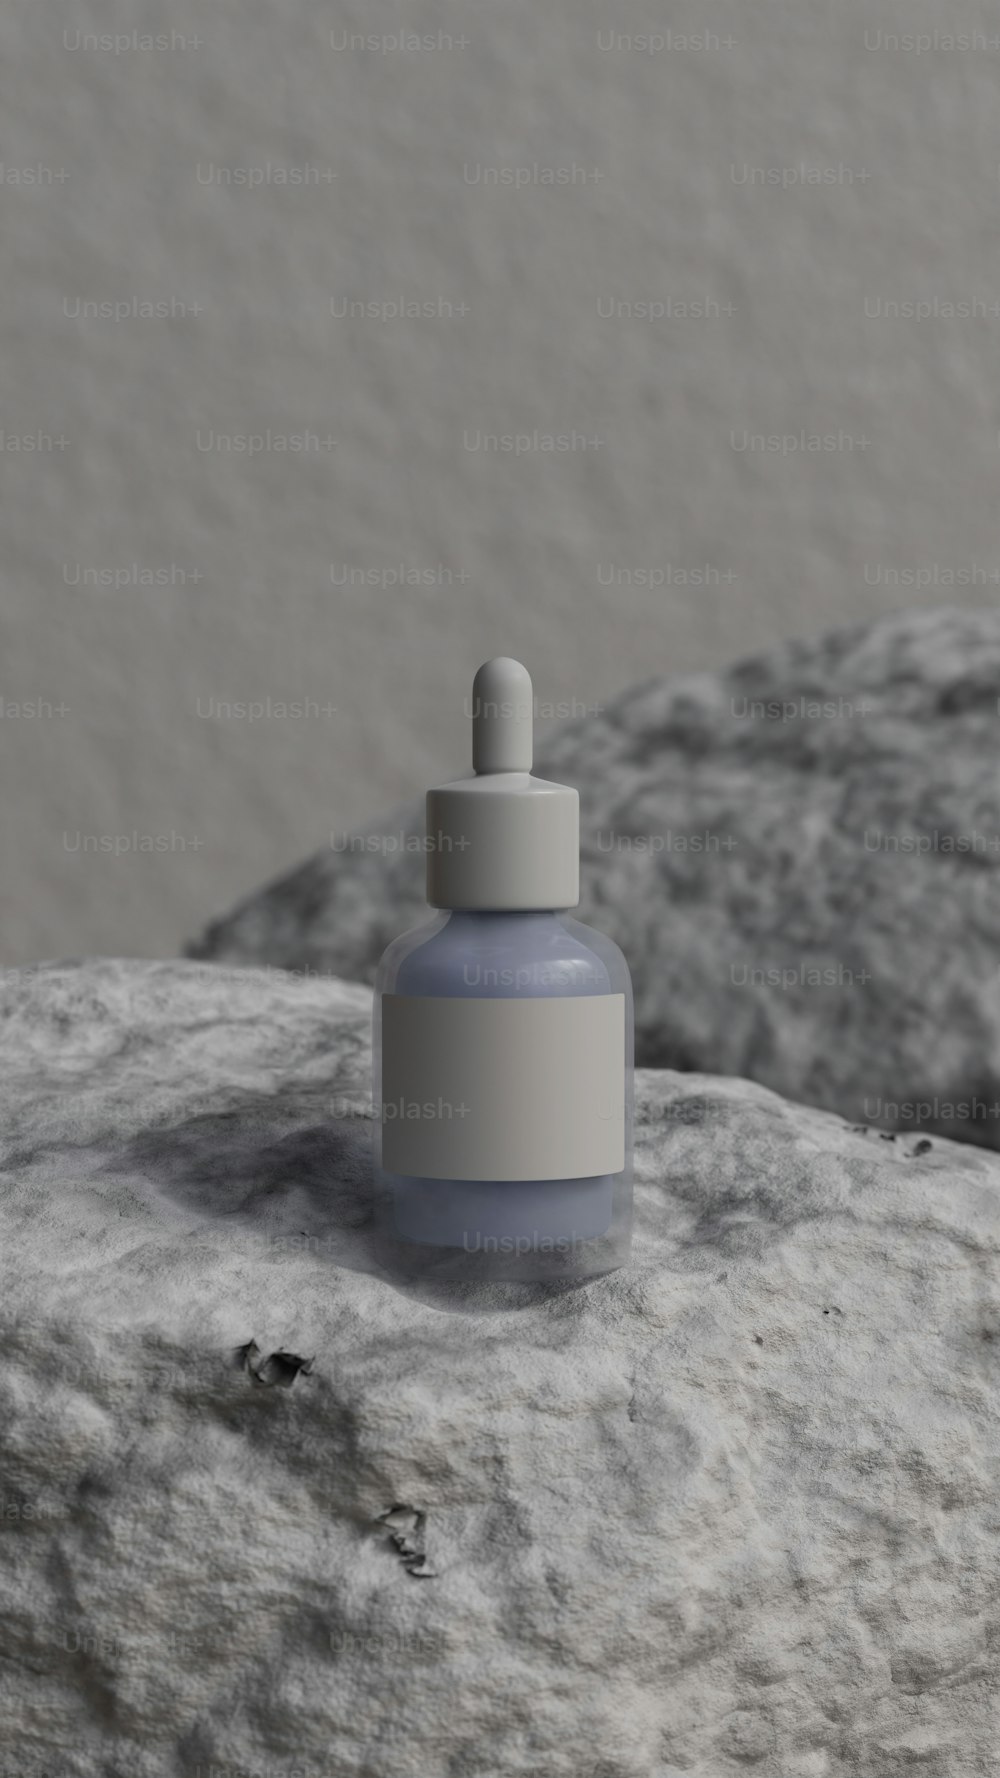 Eine kleine Flasche sitzt auf einem Felsen